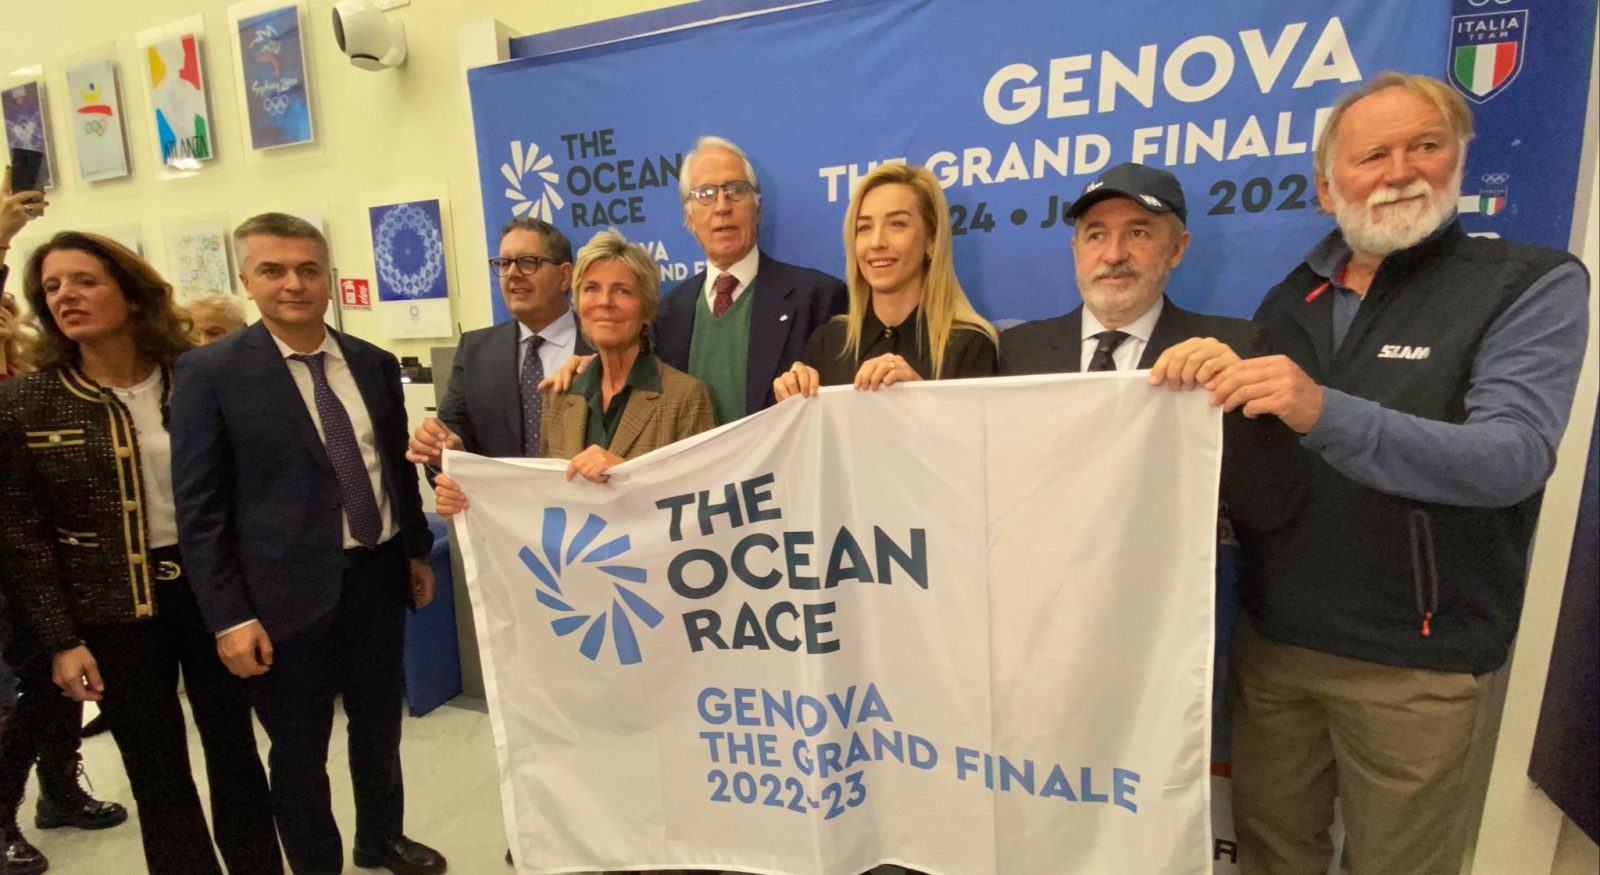 personaggi di spicco che alzano la bandiera di the ocean race the grand finale durante la presentazione alla sala d'onore del coni, manifestazione di cui ett è sponsor